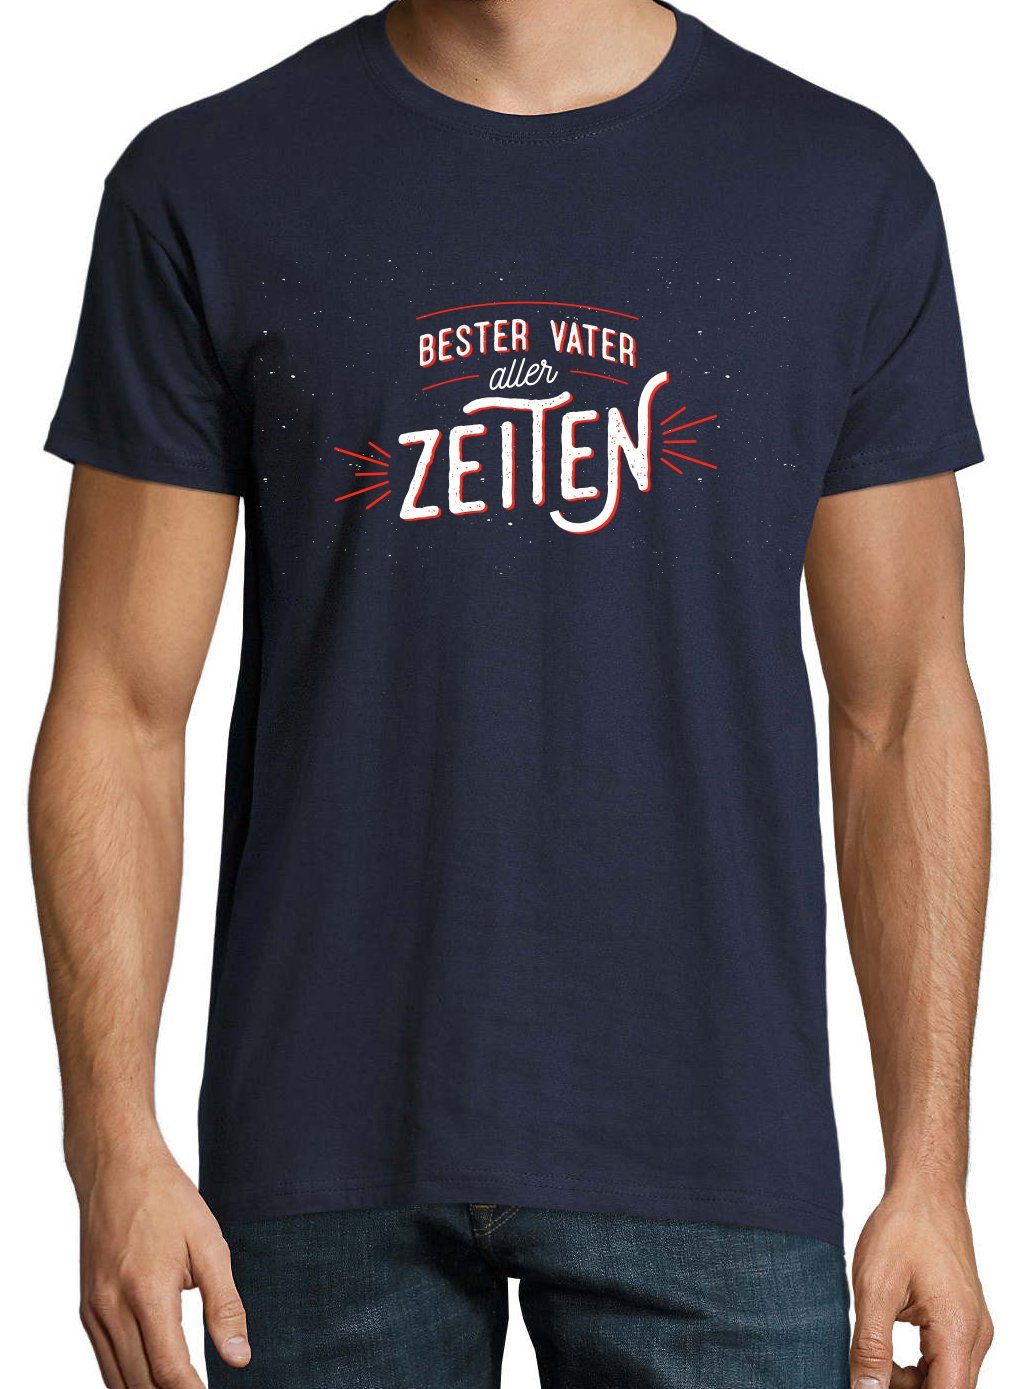 mit Aller Youth Navyblau trendigem T-Shirt Designz Vater Zeiten Frontprint Shirt Herren Bester